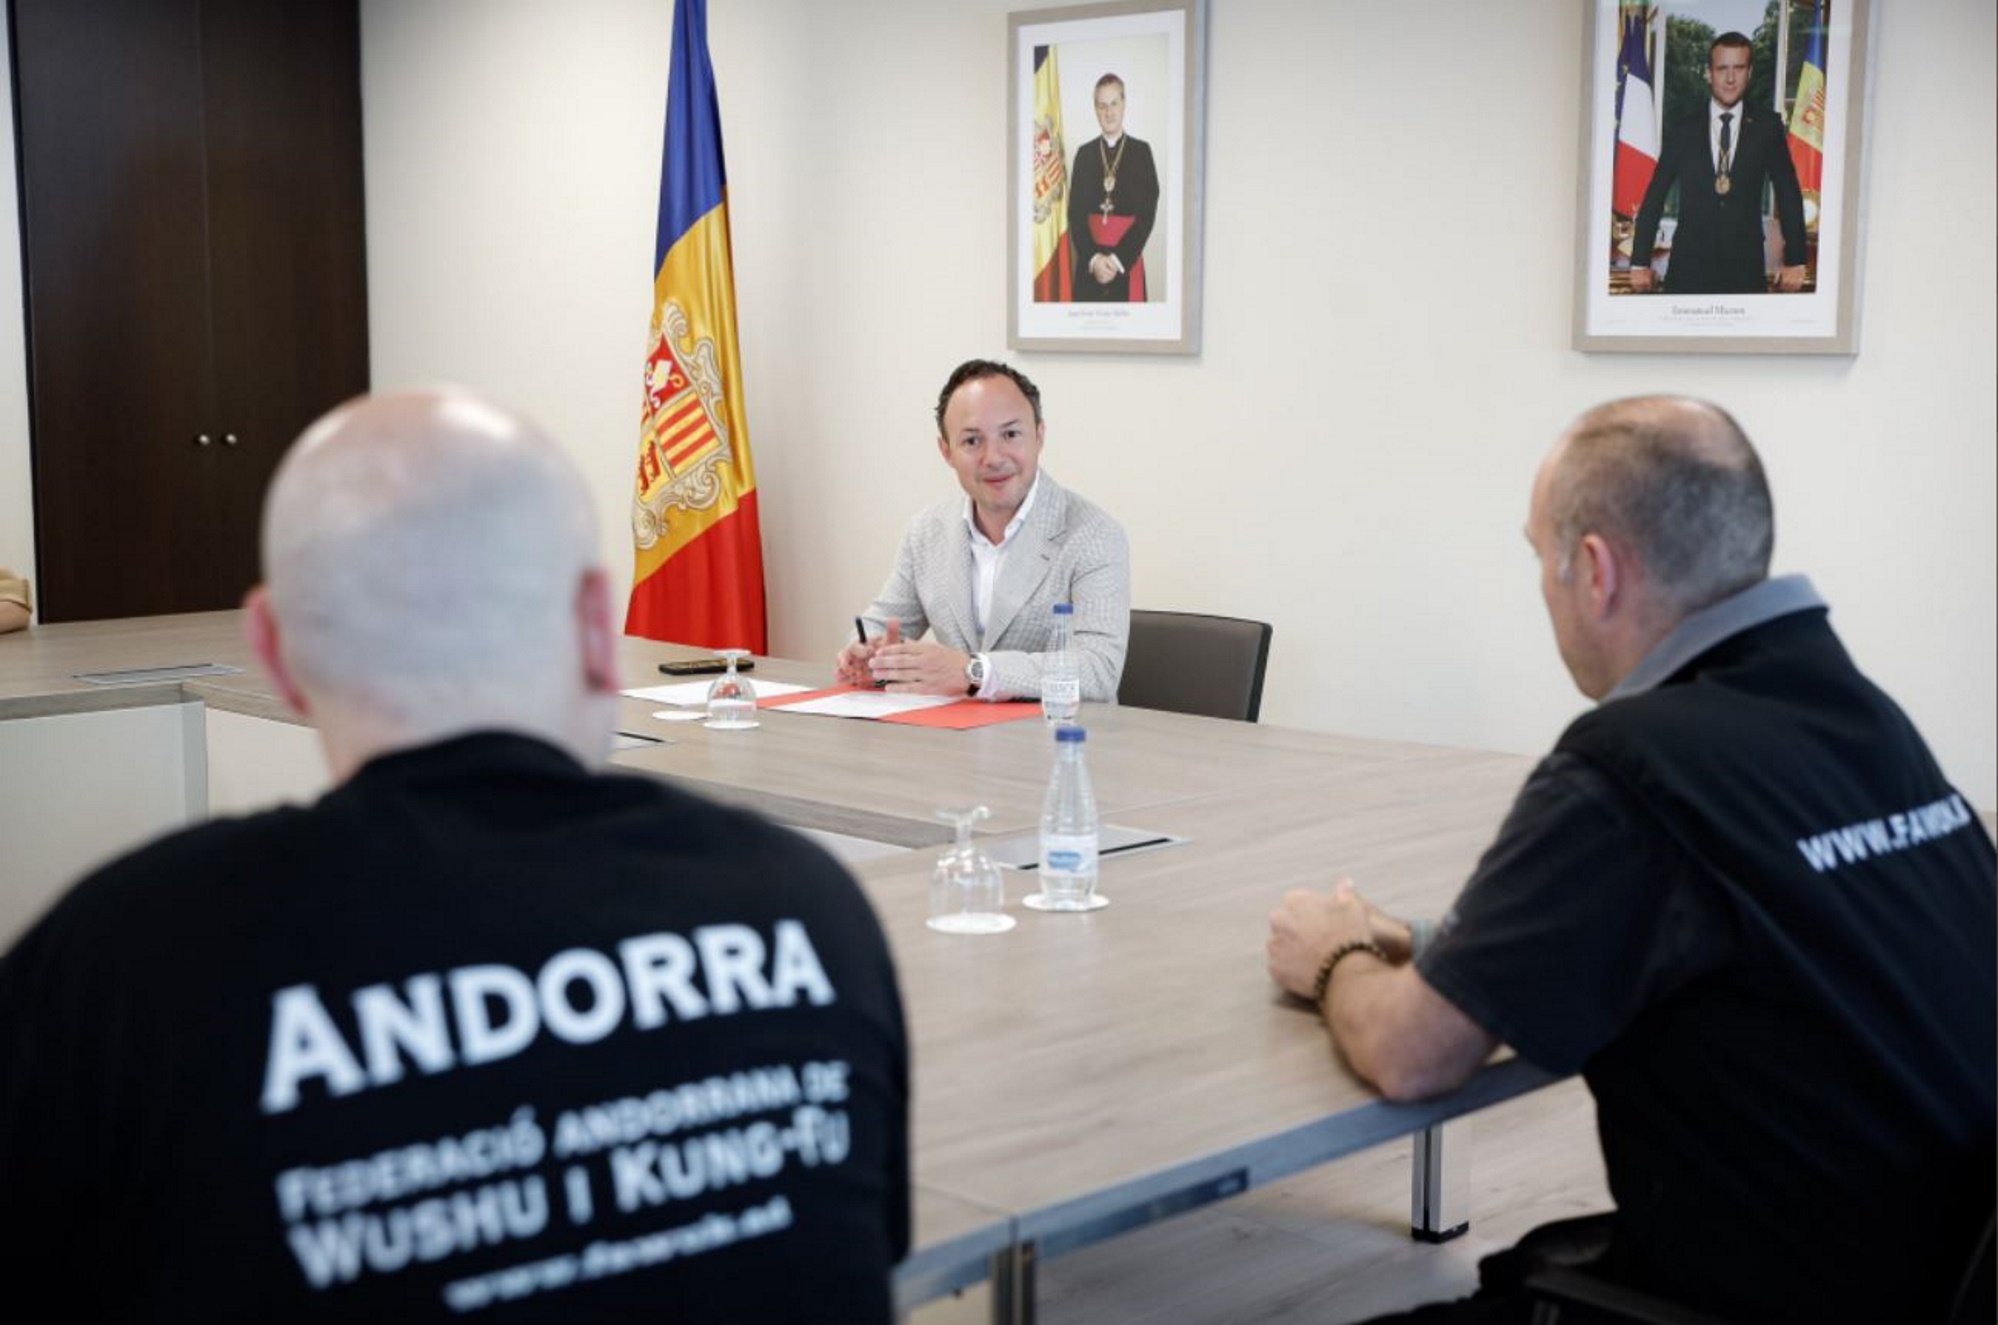 Andorra insta els funcionaris a parlar als ciutadans en català i no canviar de llengua